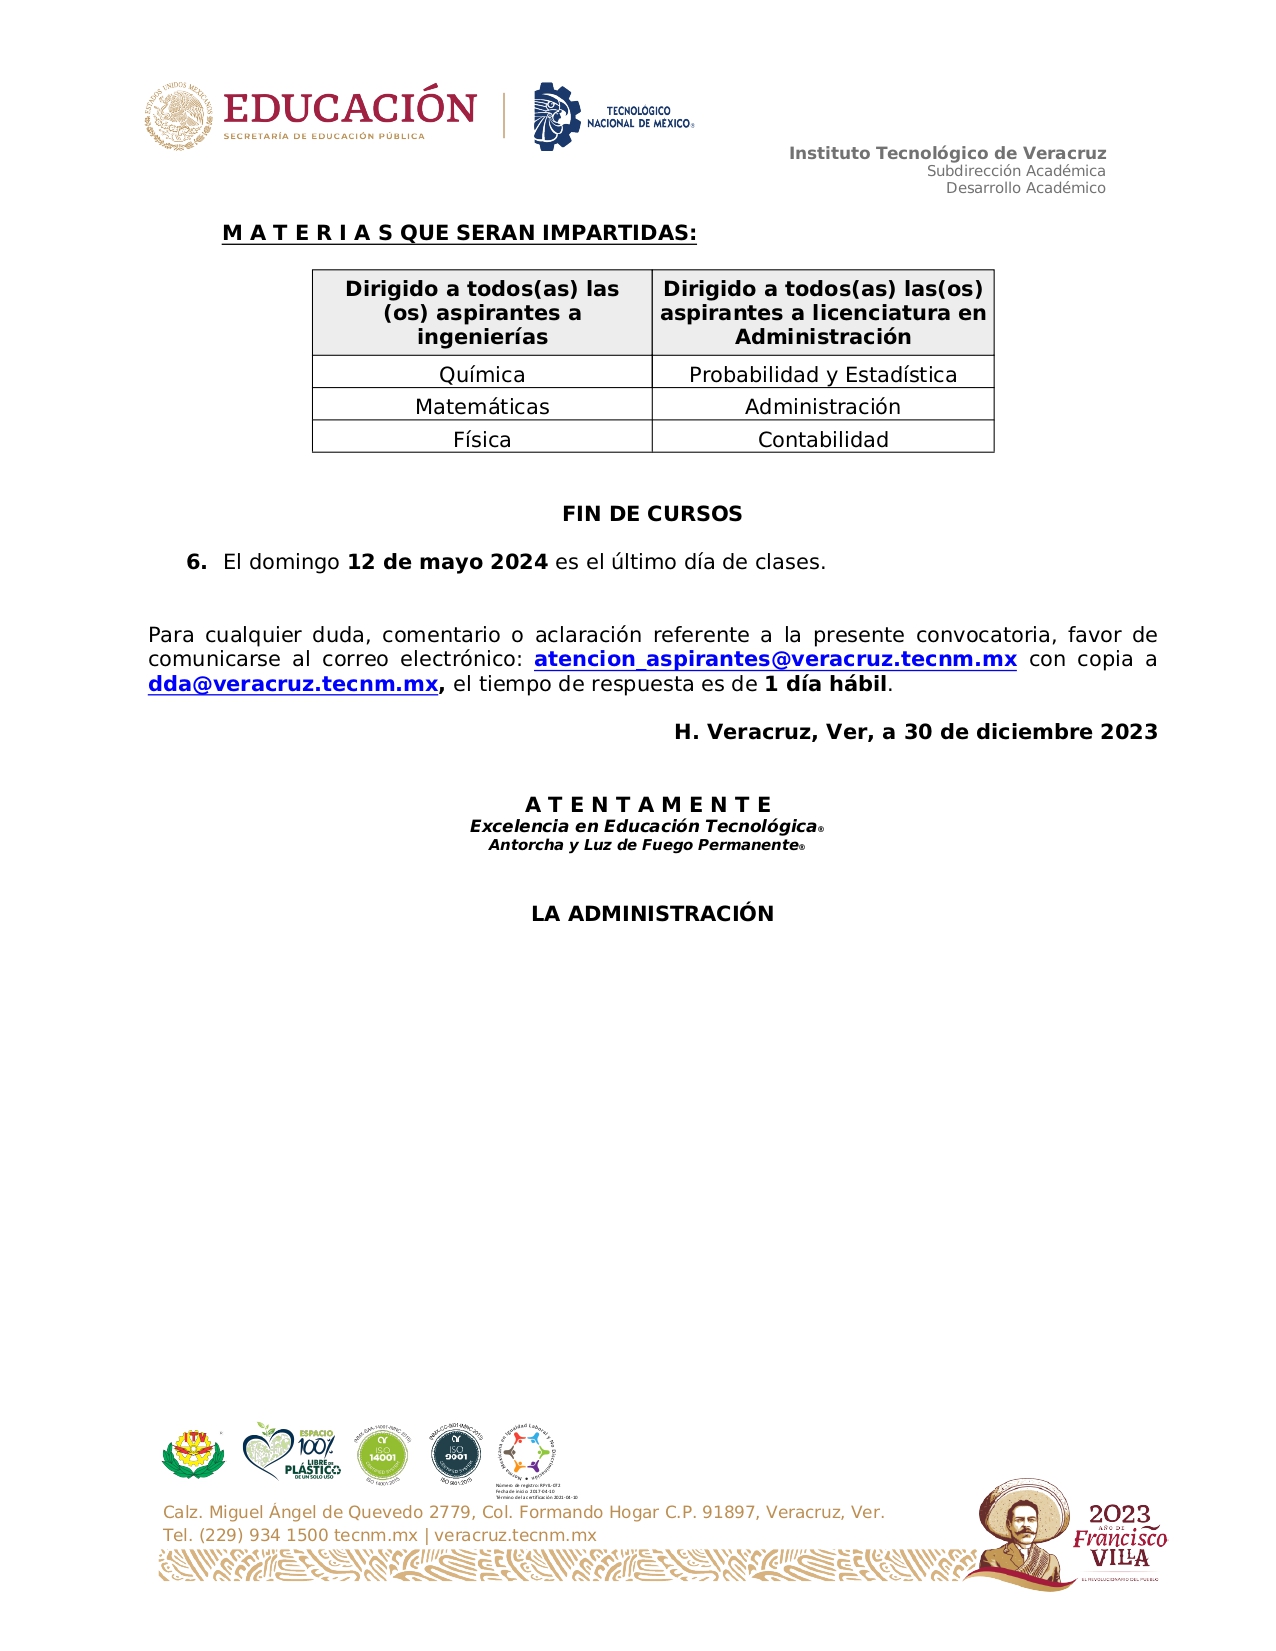 02_Convocatoria_Curso_de_Preparación_para_Examen_de_Admisión__page-0002.jpg